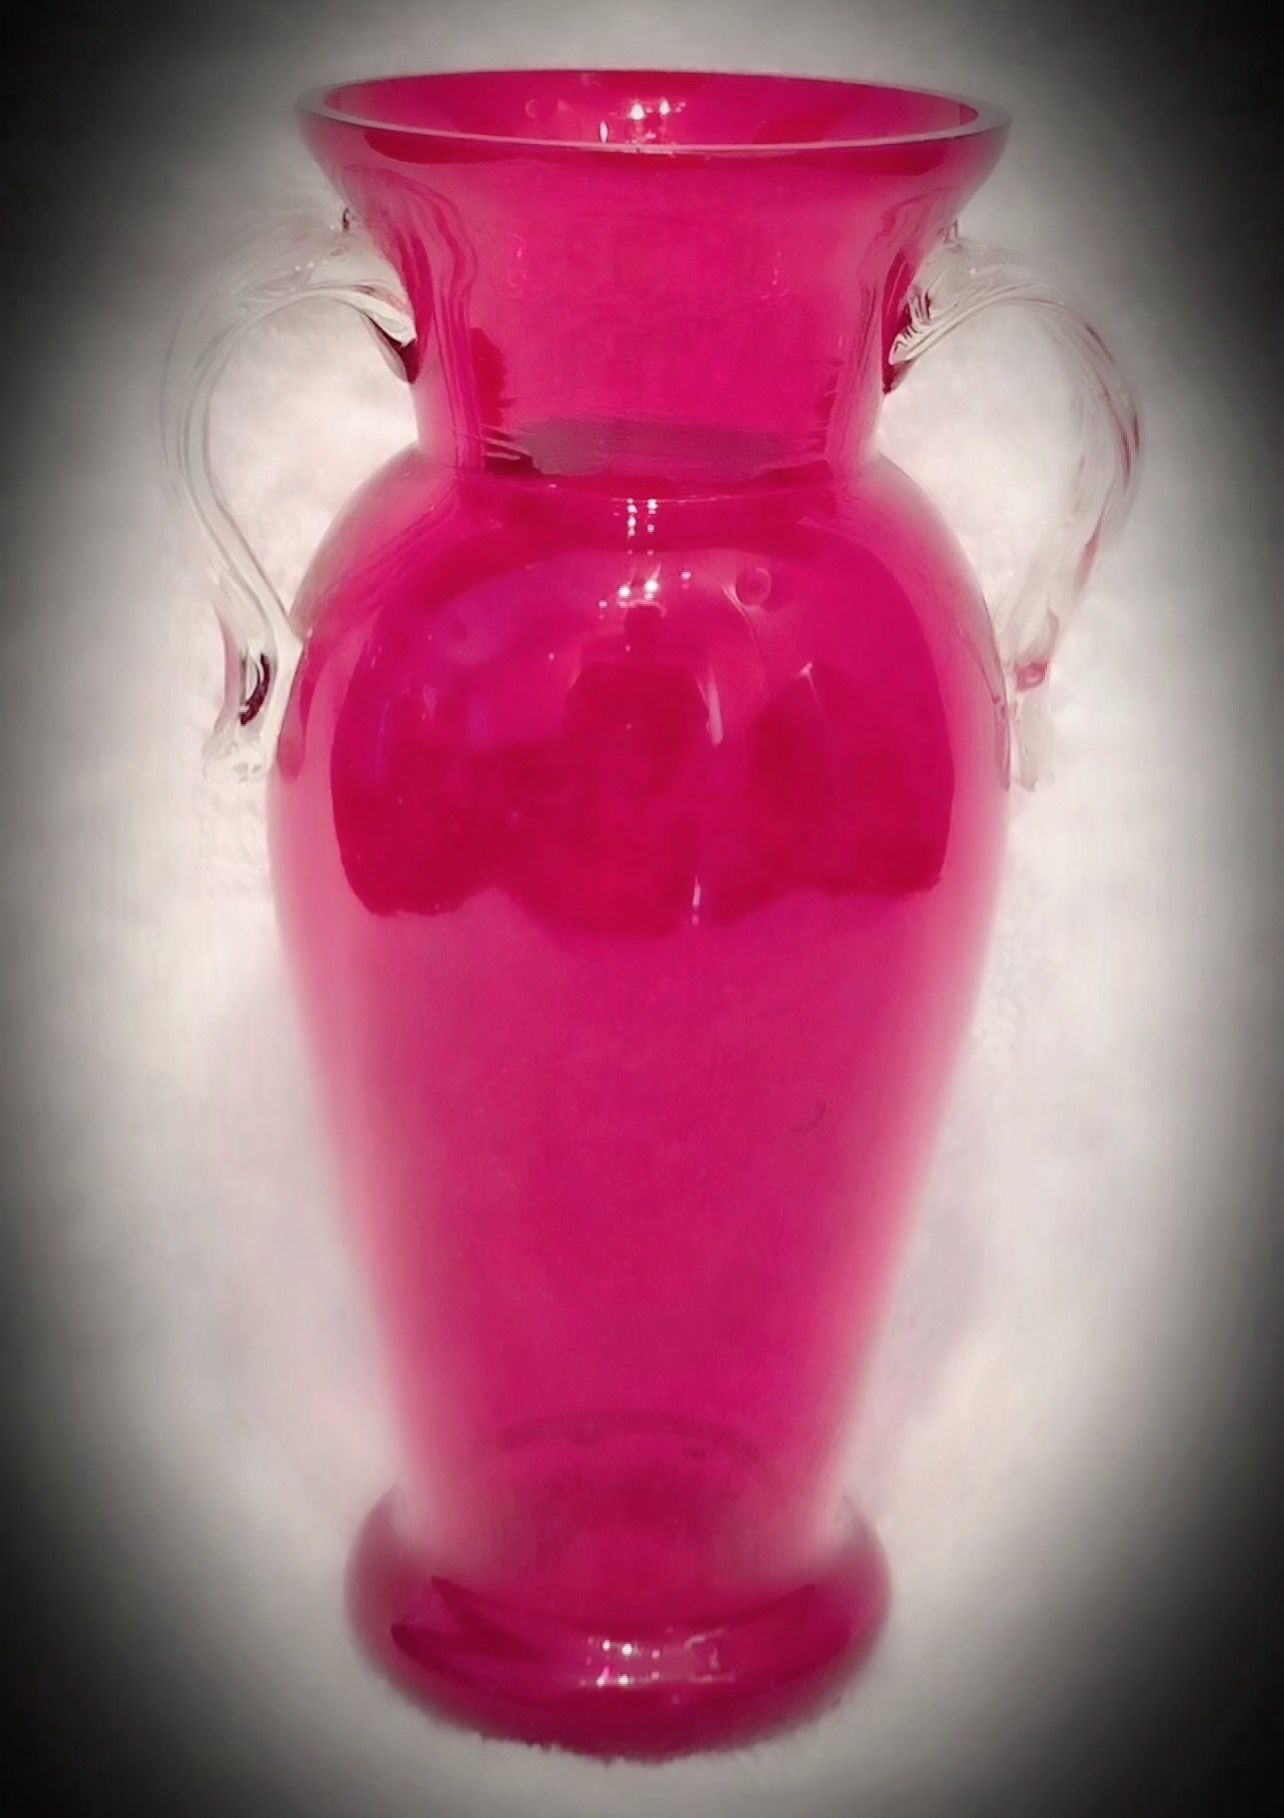 Antique Ruby Red Cranberry Fine Art Glass Czech/Czechoslovakia Bud Vase Vintage Original Artist/Artisan Hand-Honed/Articulated/Blown Handmade/Made